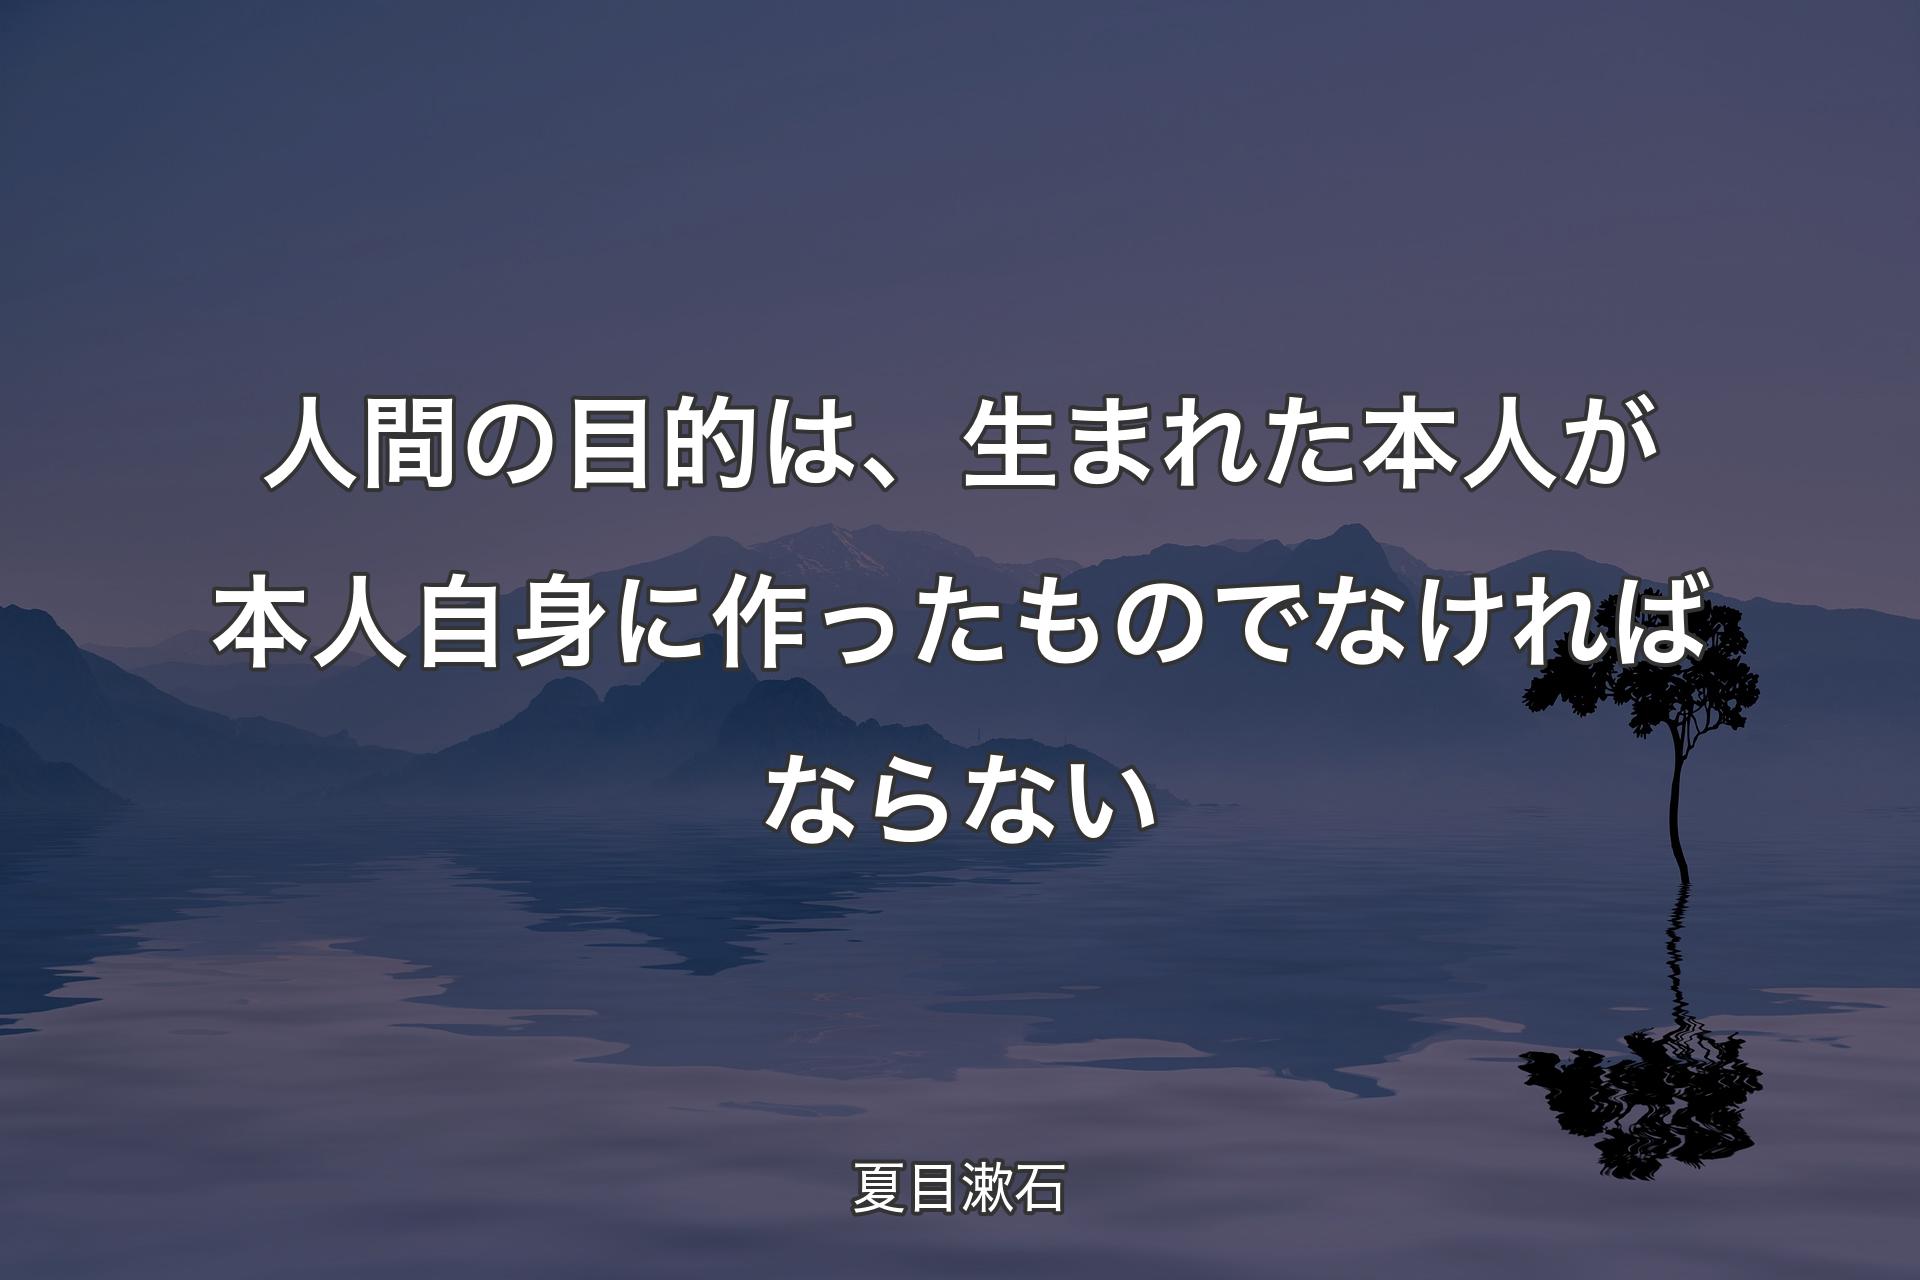 【背景4】人間の目的は、生まれた本人が本人自身に作ったものでなければならない - 夏目漱石